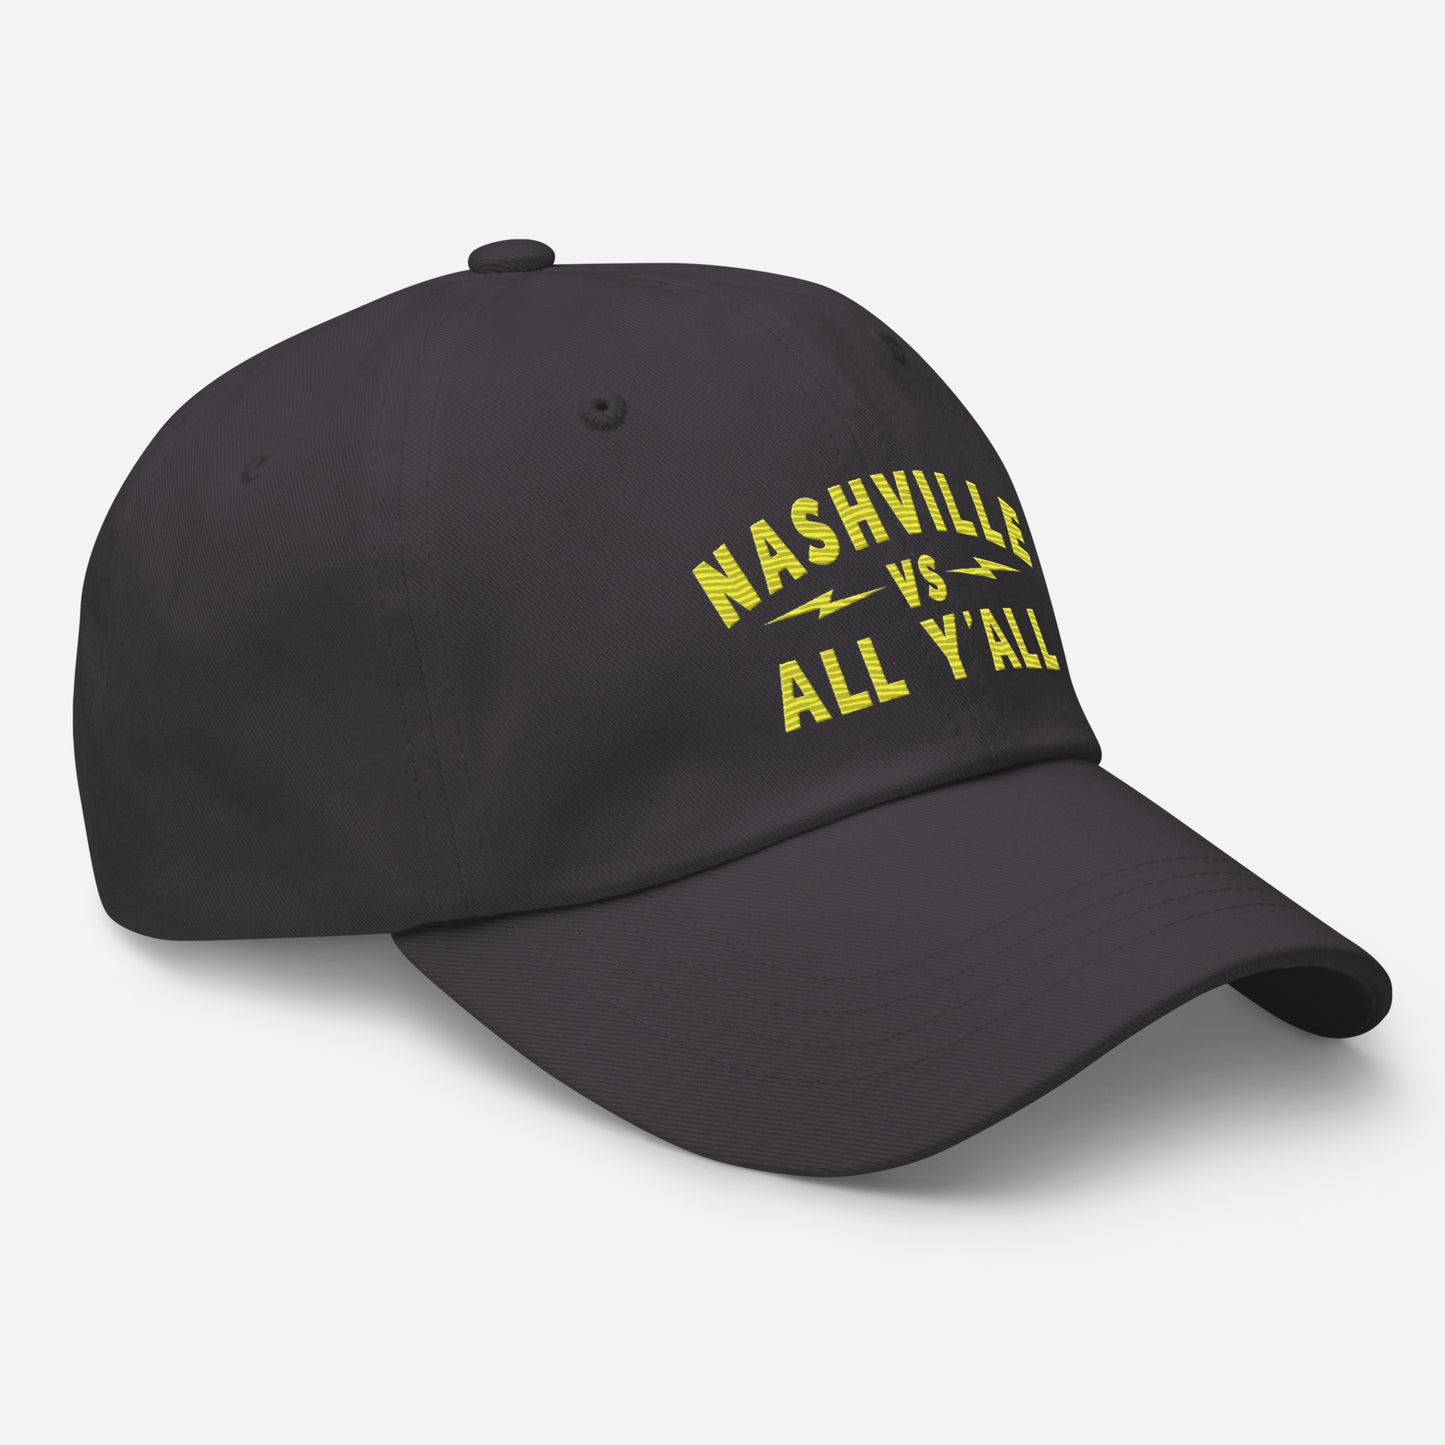 Nashville Vs Curved text Dad hat